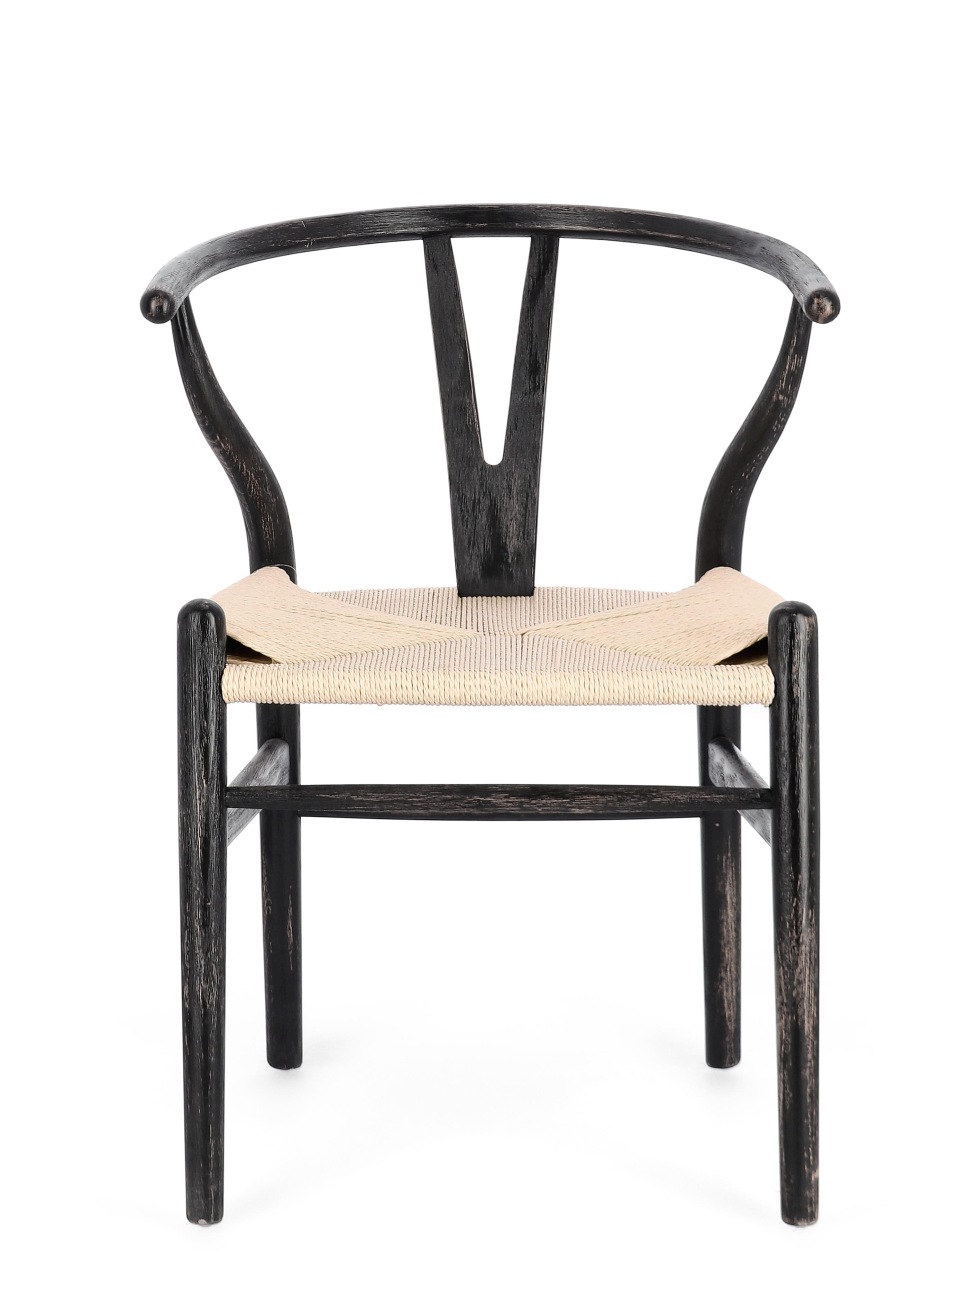 Der Esszimmerstuhl Artas überzeugt mit seinem modernen Stil. Gefertigt wurde er aus Seilen, welche einen natürlichen Farbton besitzt. Das Gestell ist aus Buchenholz und hat ein schwarze Farbe. Der Stuhl besitzt eine Sitzhöhe von 48 cm.